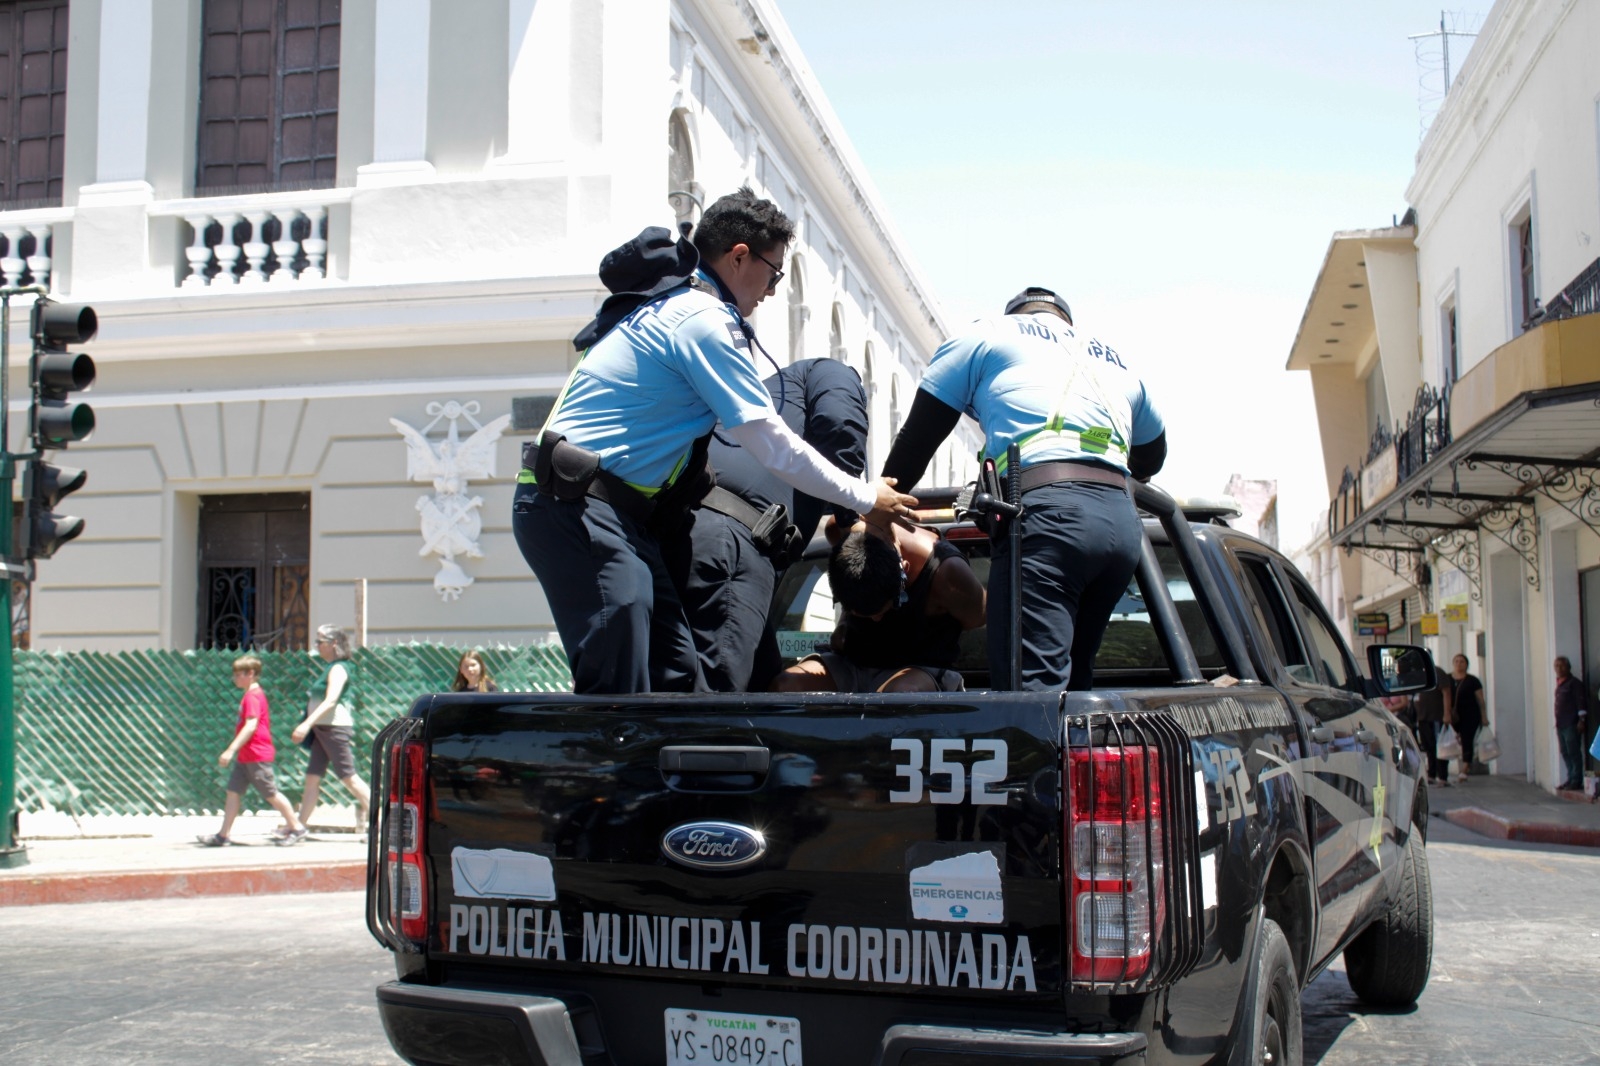 El joven fue llevado a la comandancia de la policía de Mérida